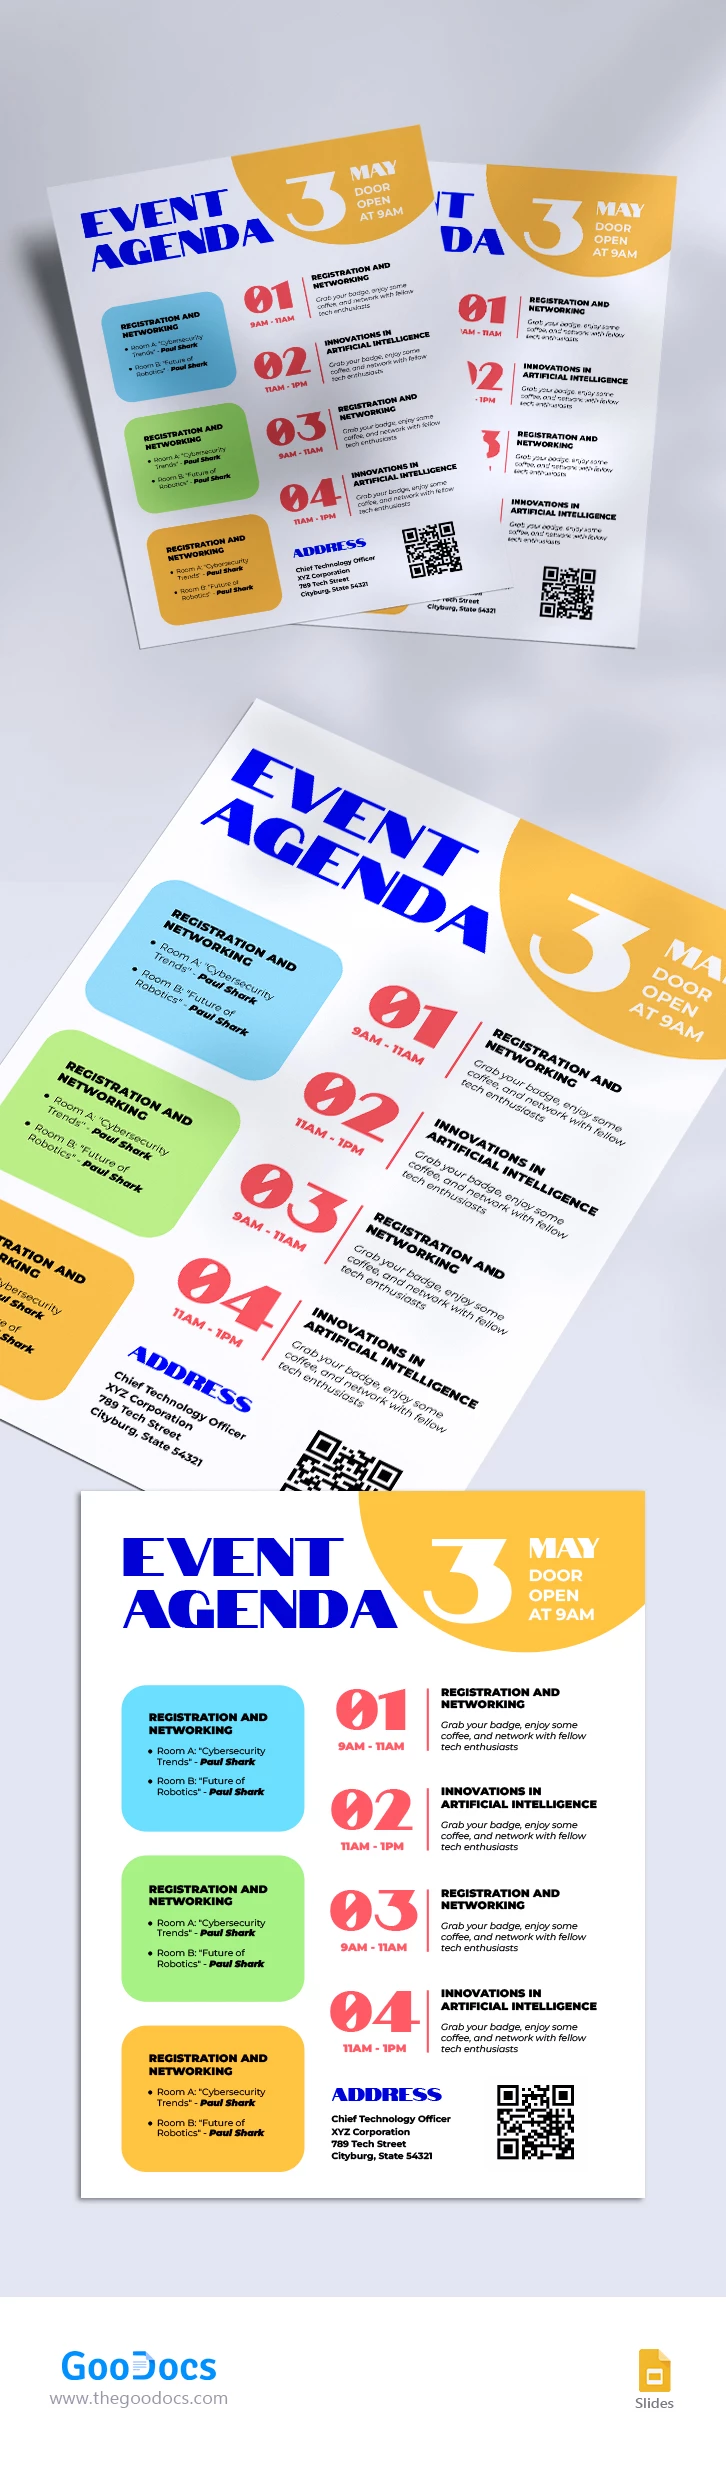 Agenda del evento - free Google Docs Template - 10067678